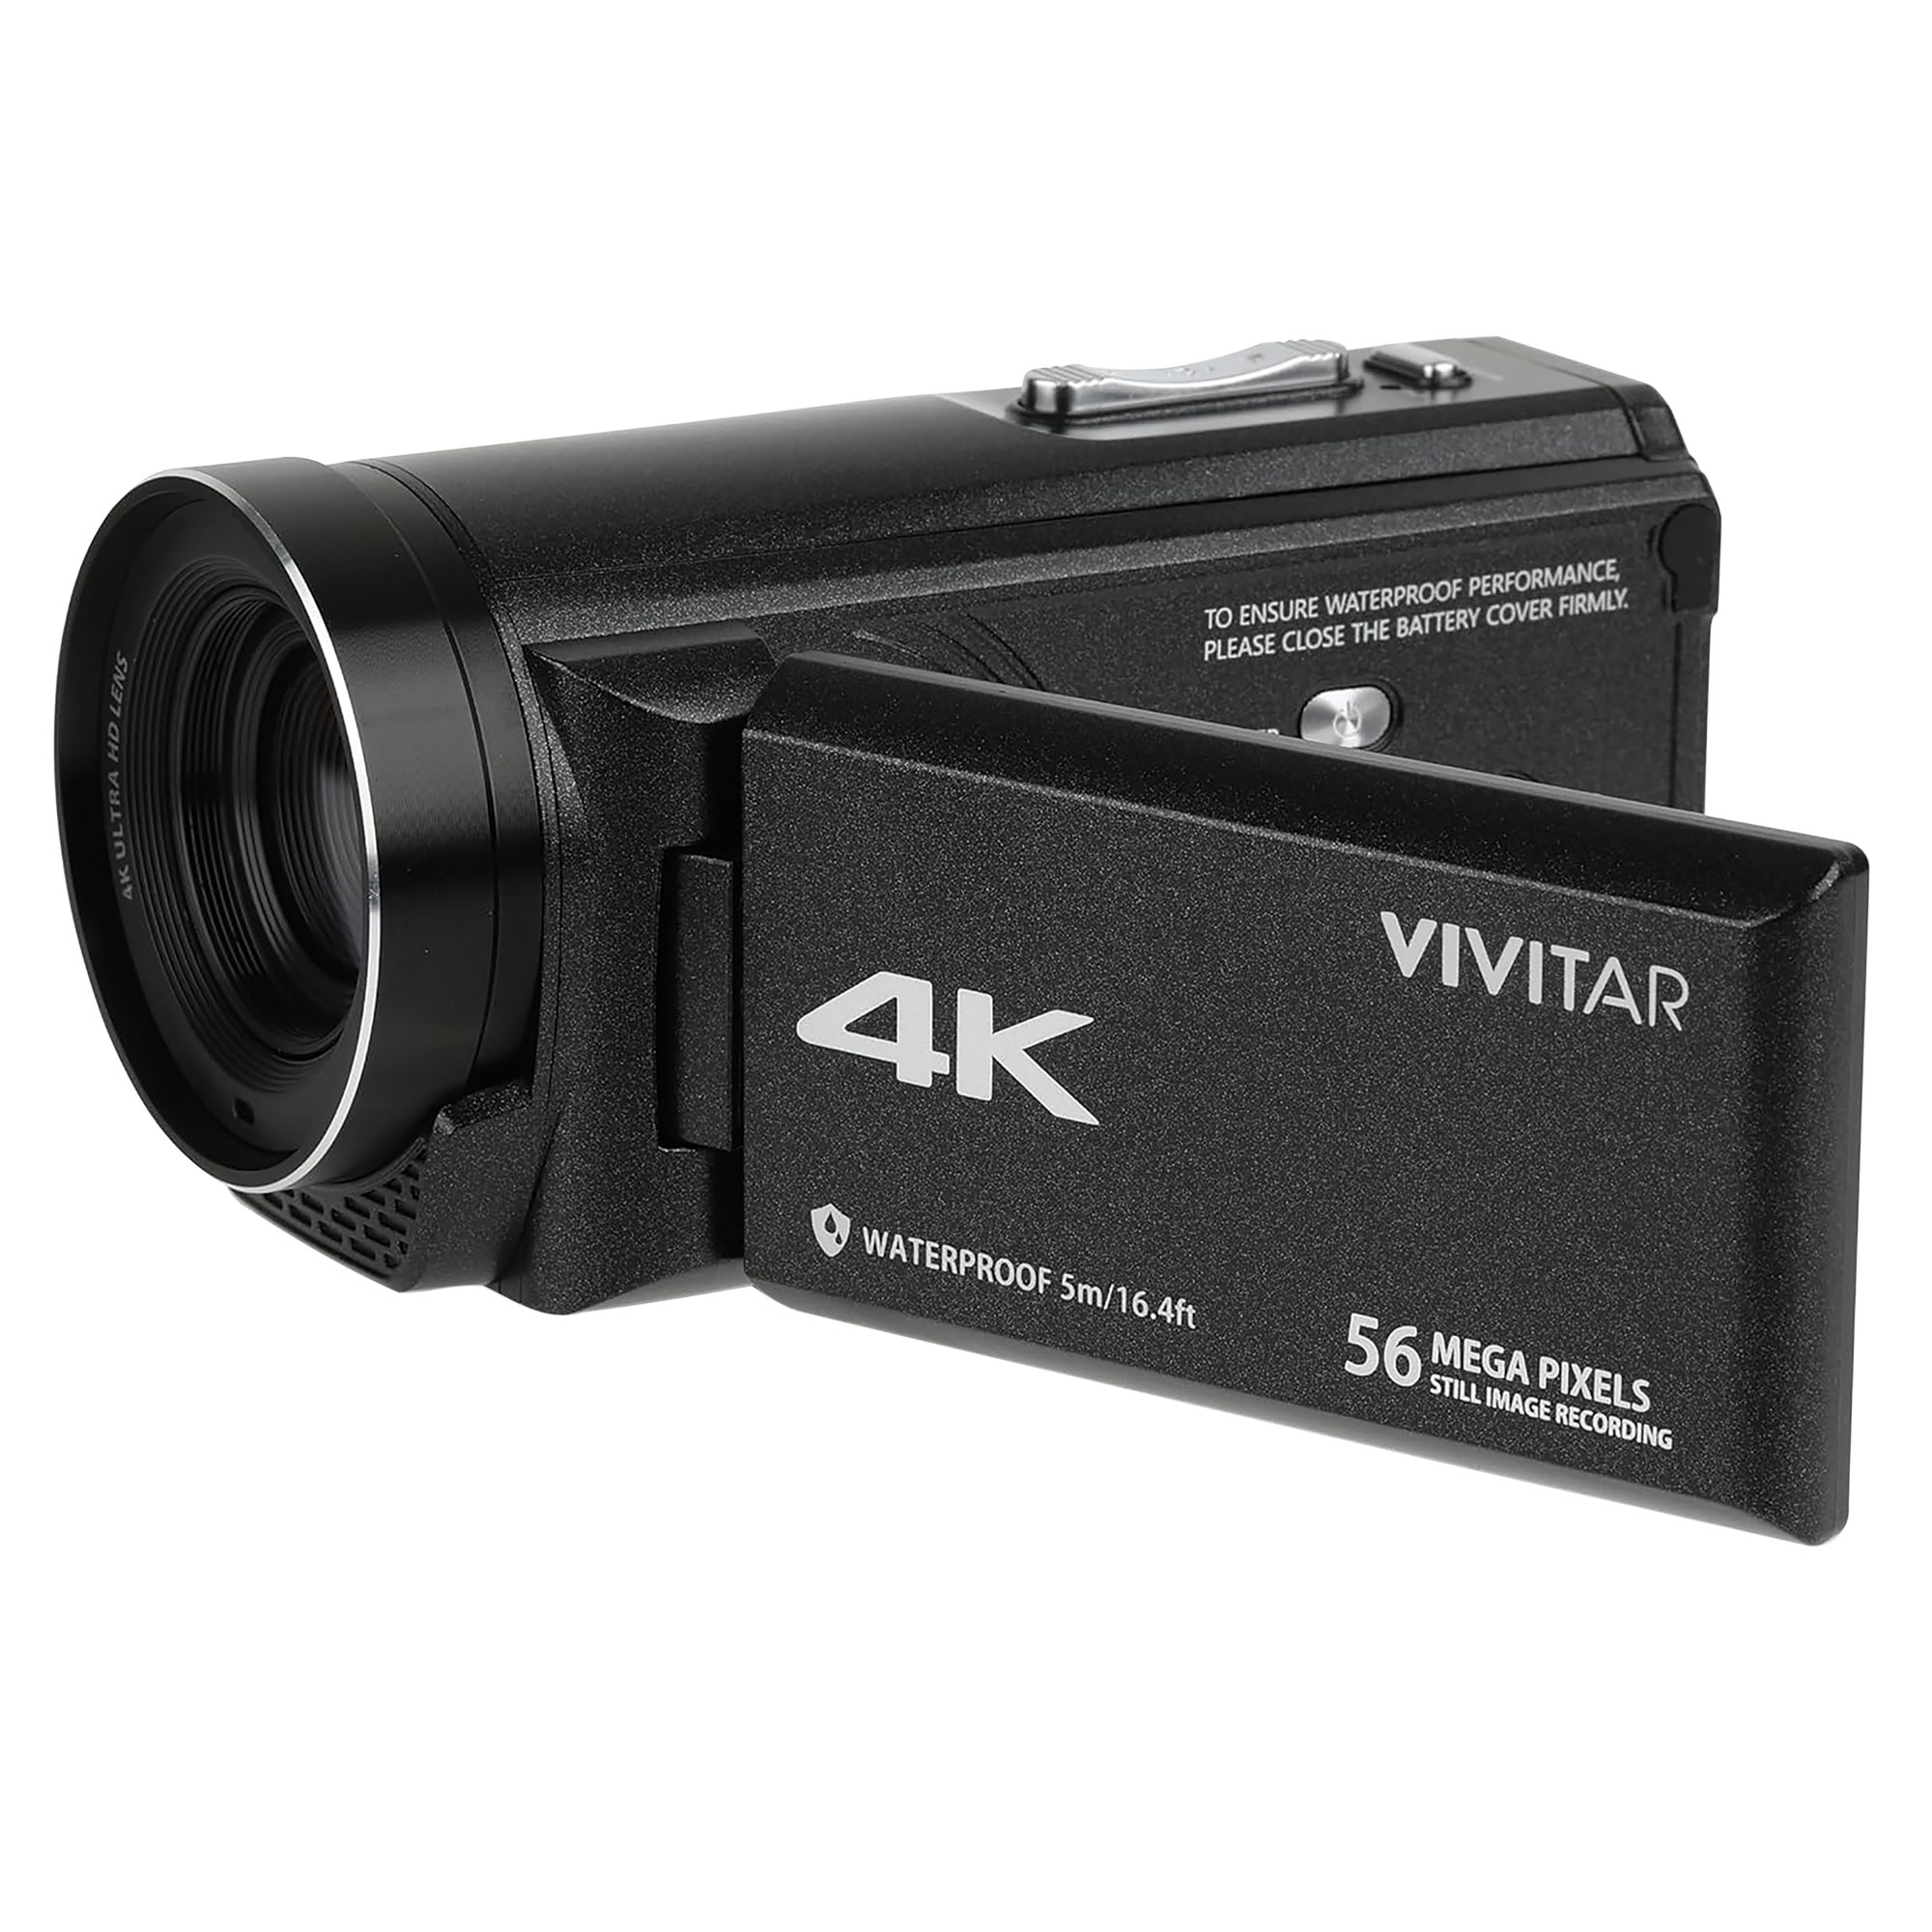 Vivitar 4K Waterproof DV Camera with 18X Zoom